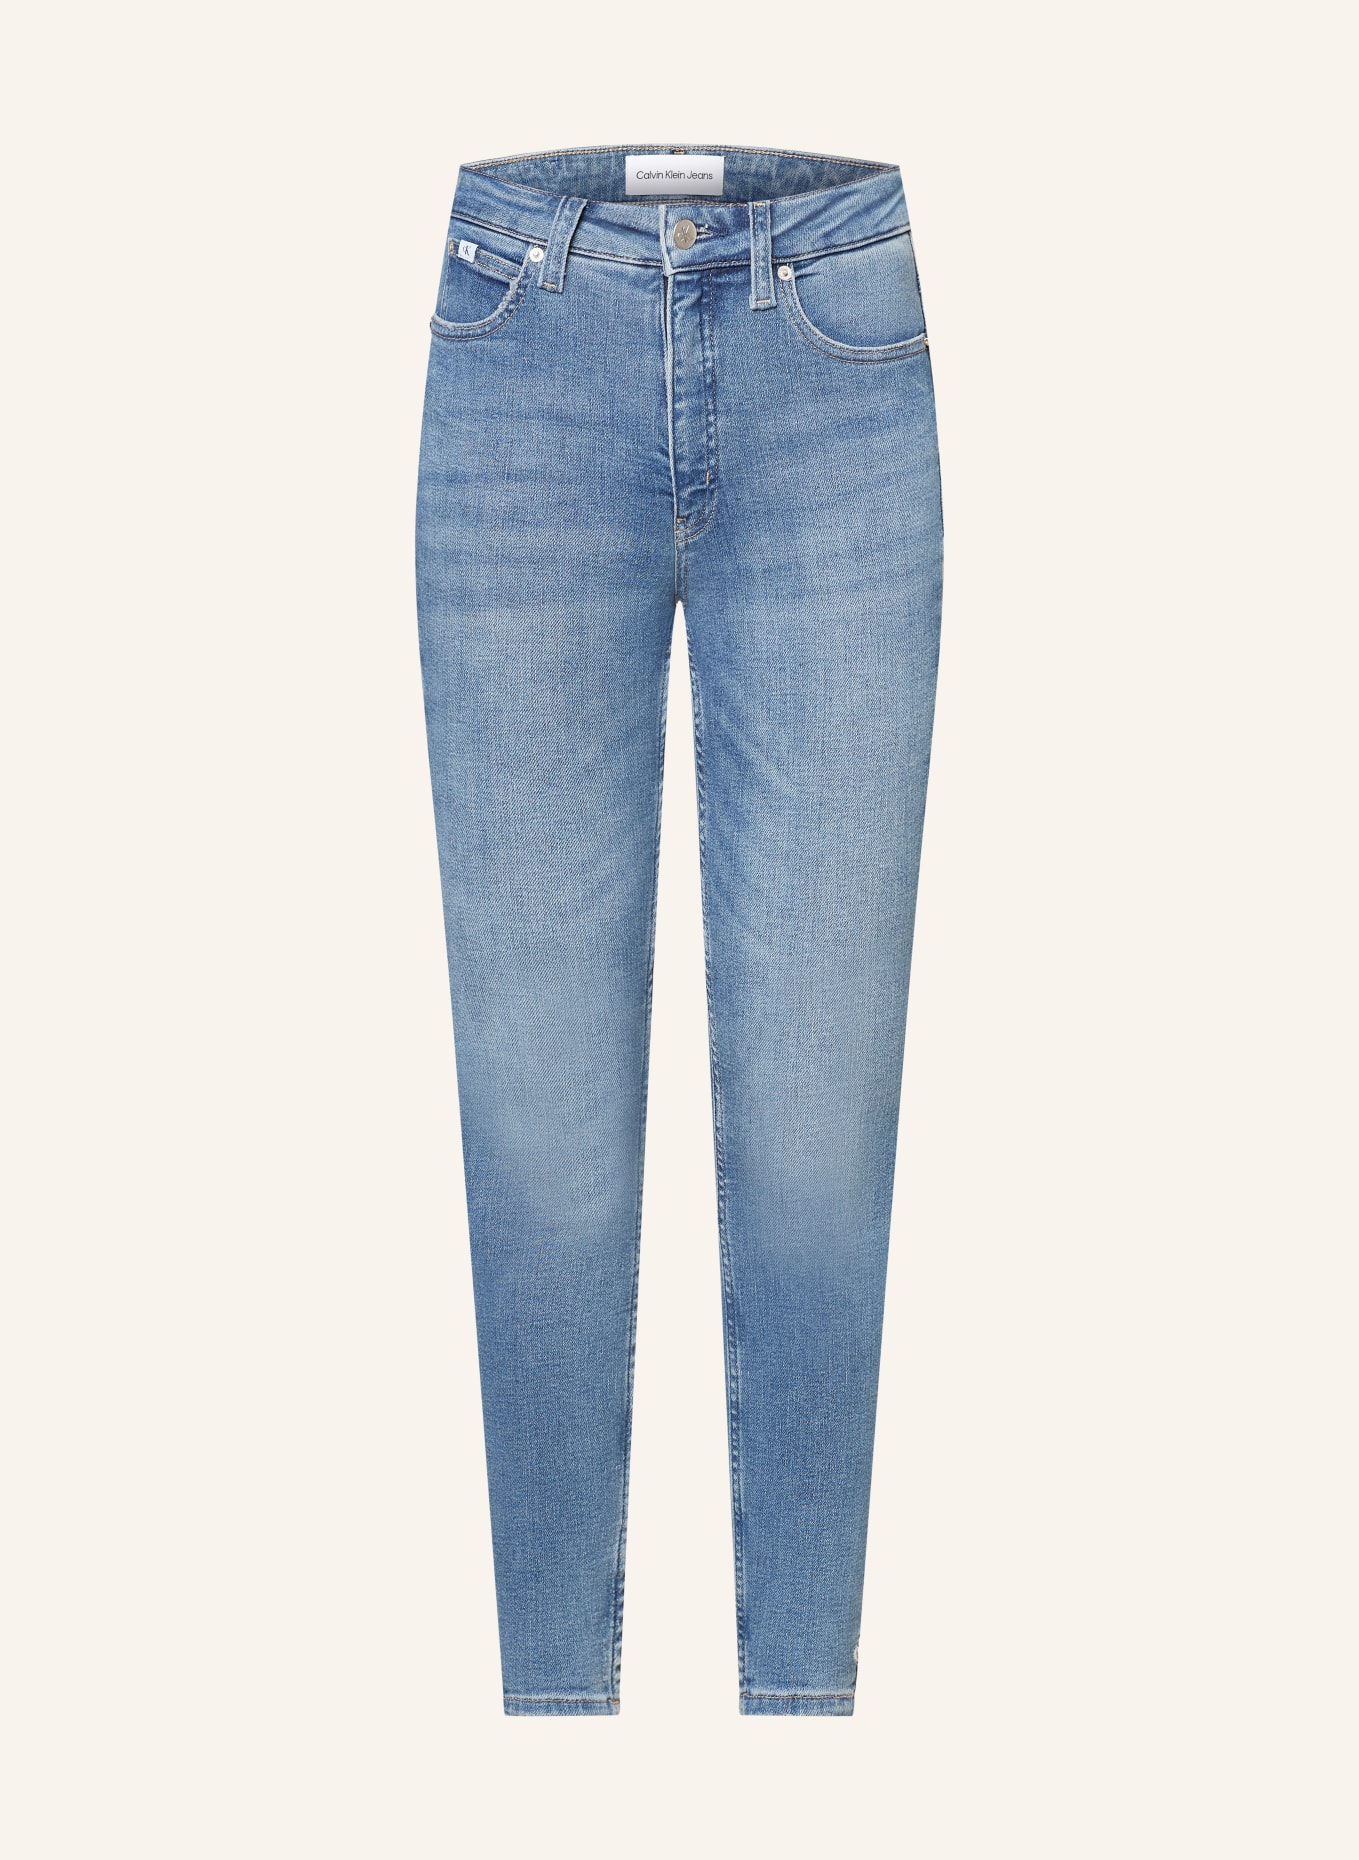 Calvin Klein Jeans 7/8 jeans, Color: 1A4 DENIM MEDIUM (Image 1)